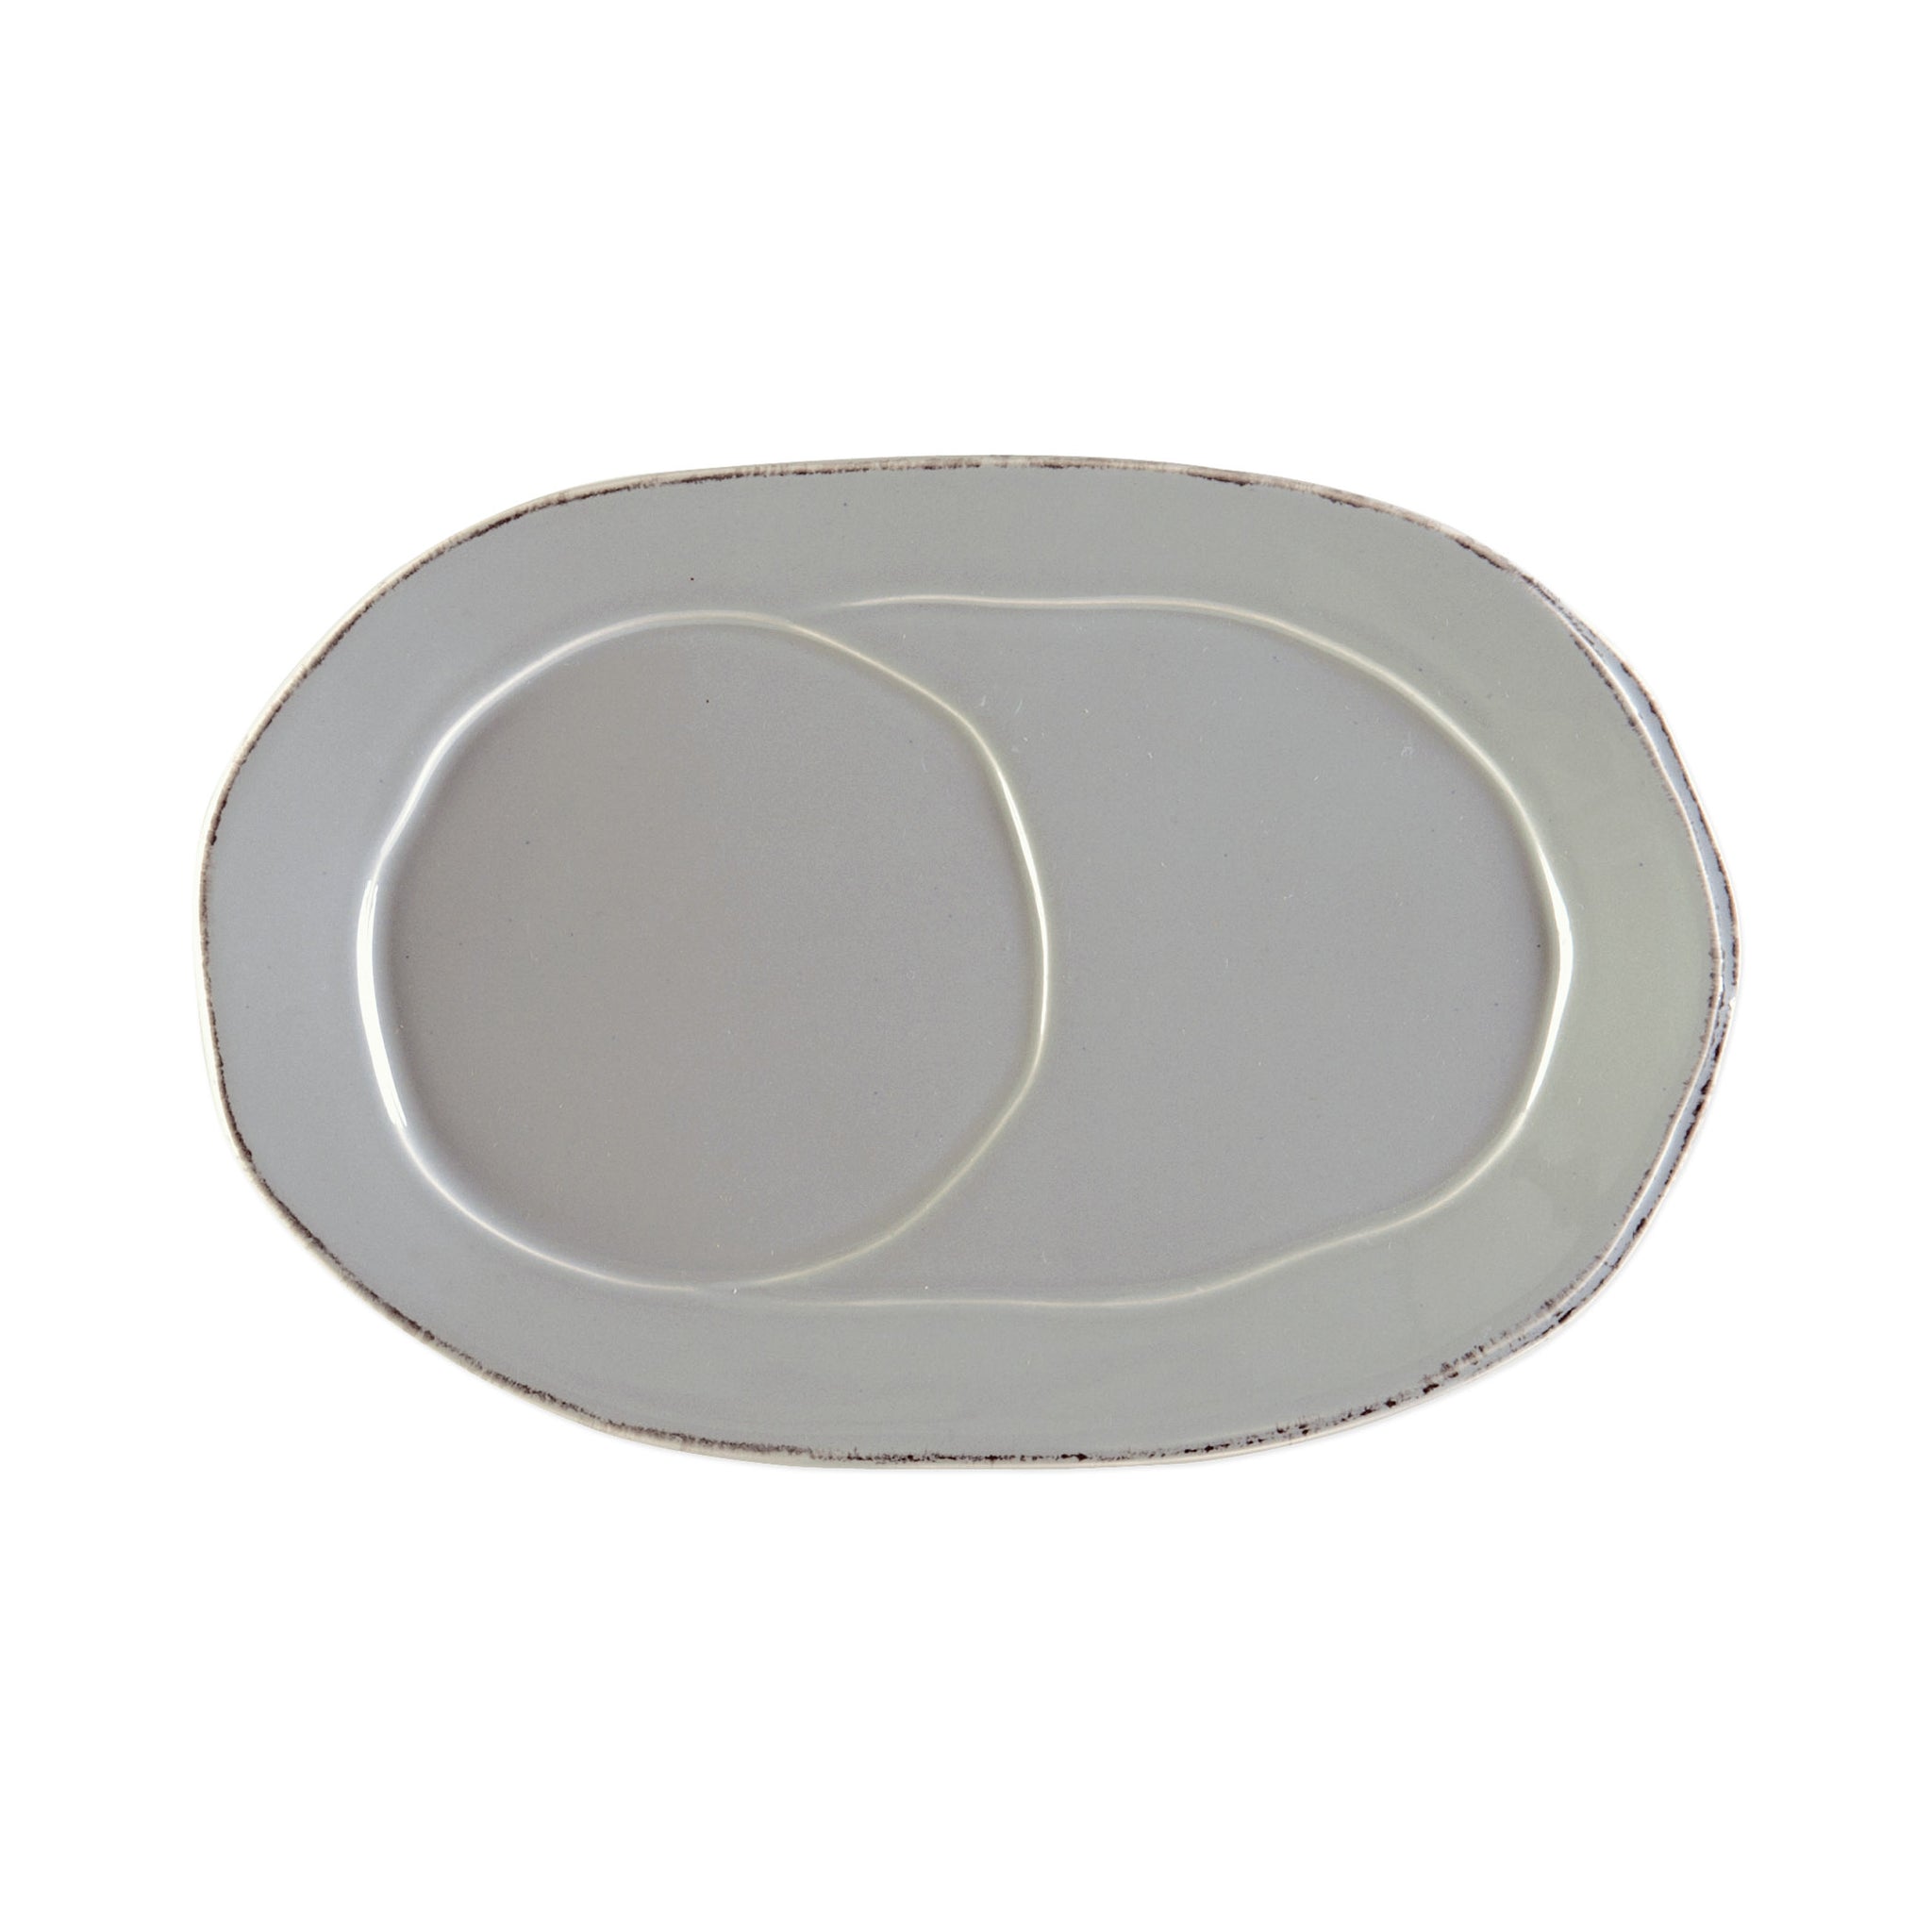 Lastra Oval Tray - Set of 4 - Gray